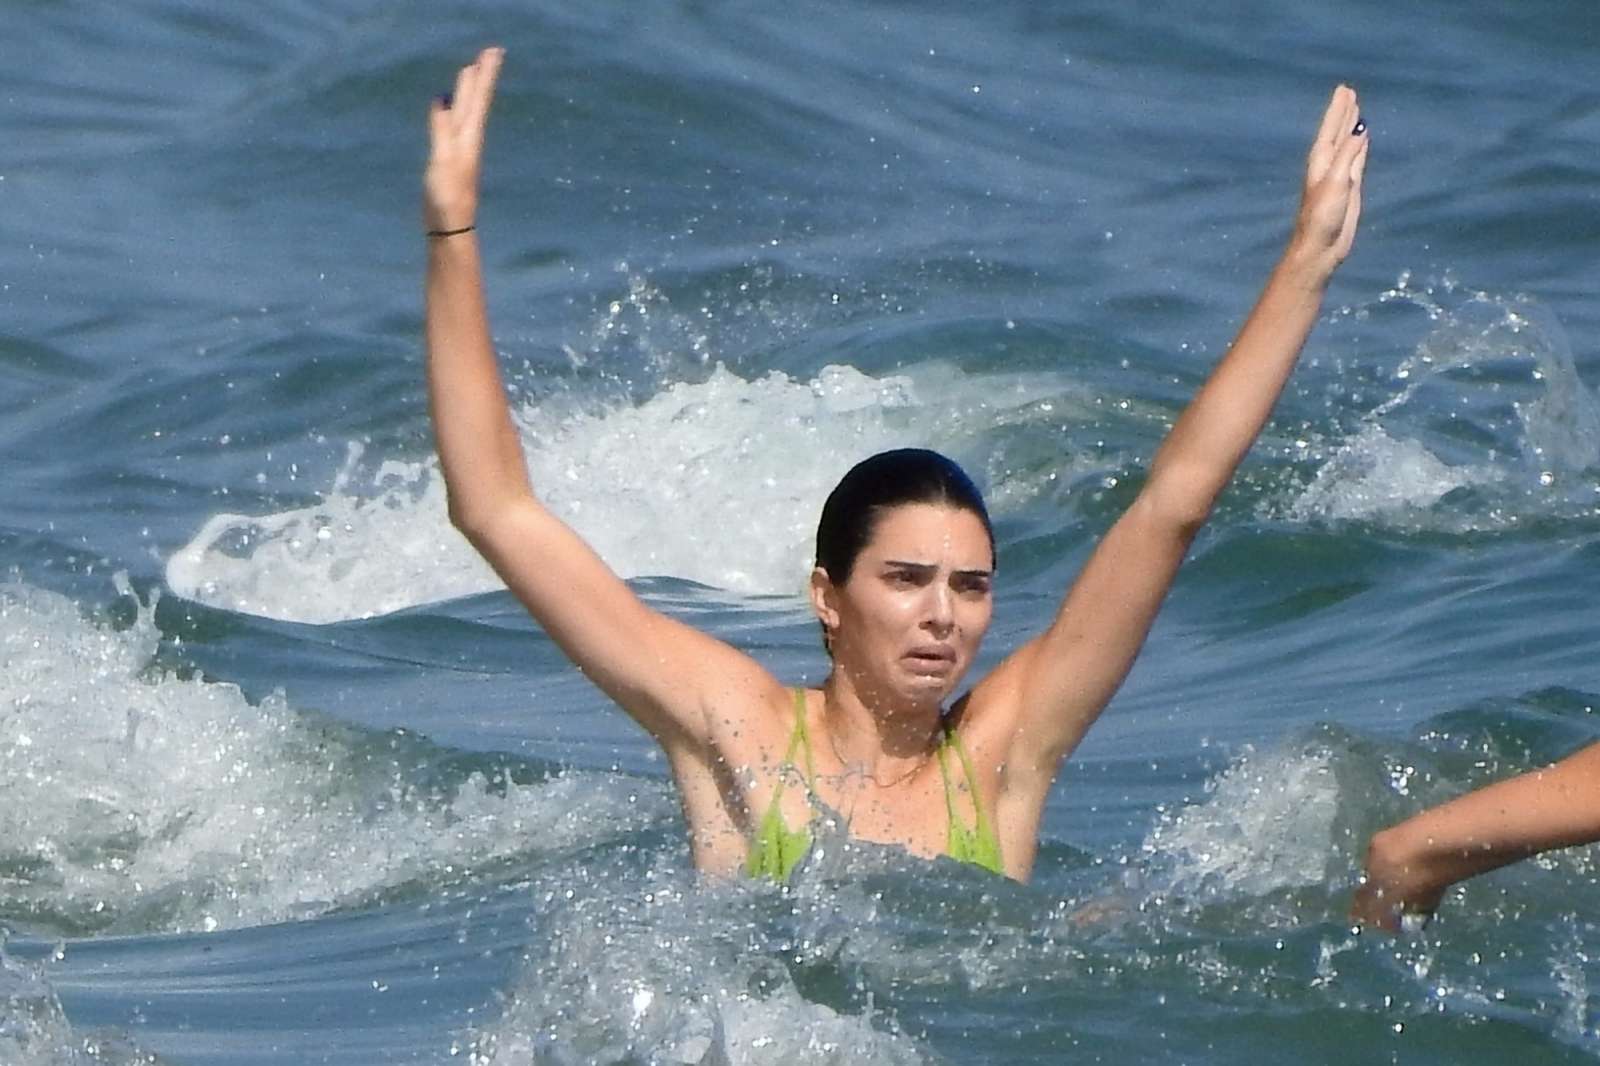 Kendall Jenner in a skimpy neon green bikini on the beach in Malibu